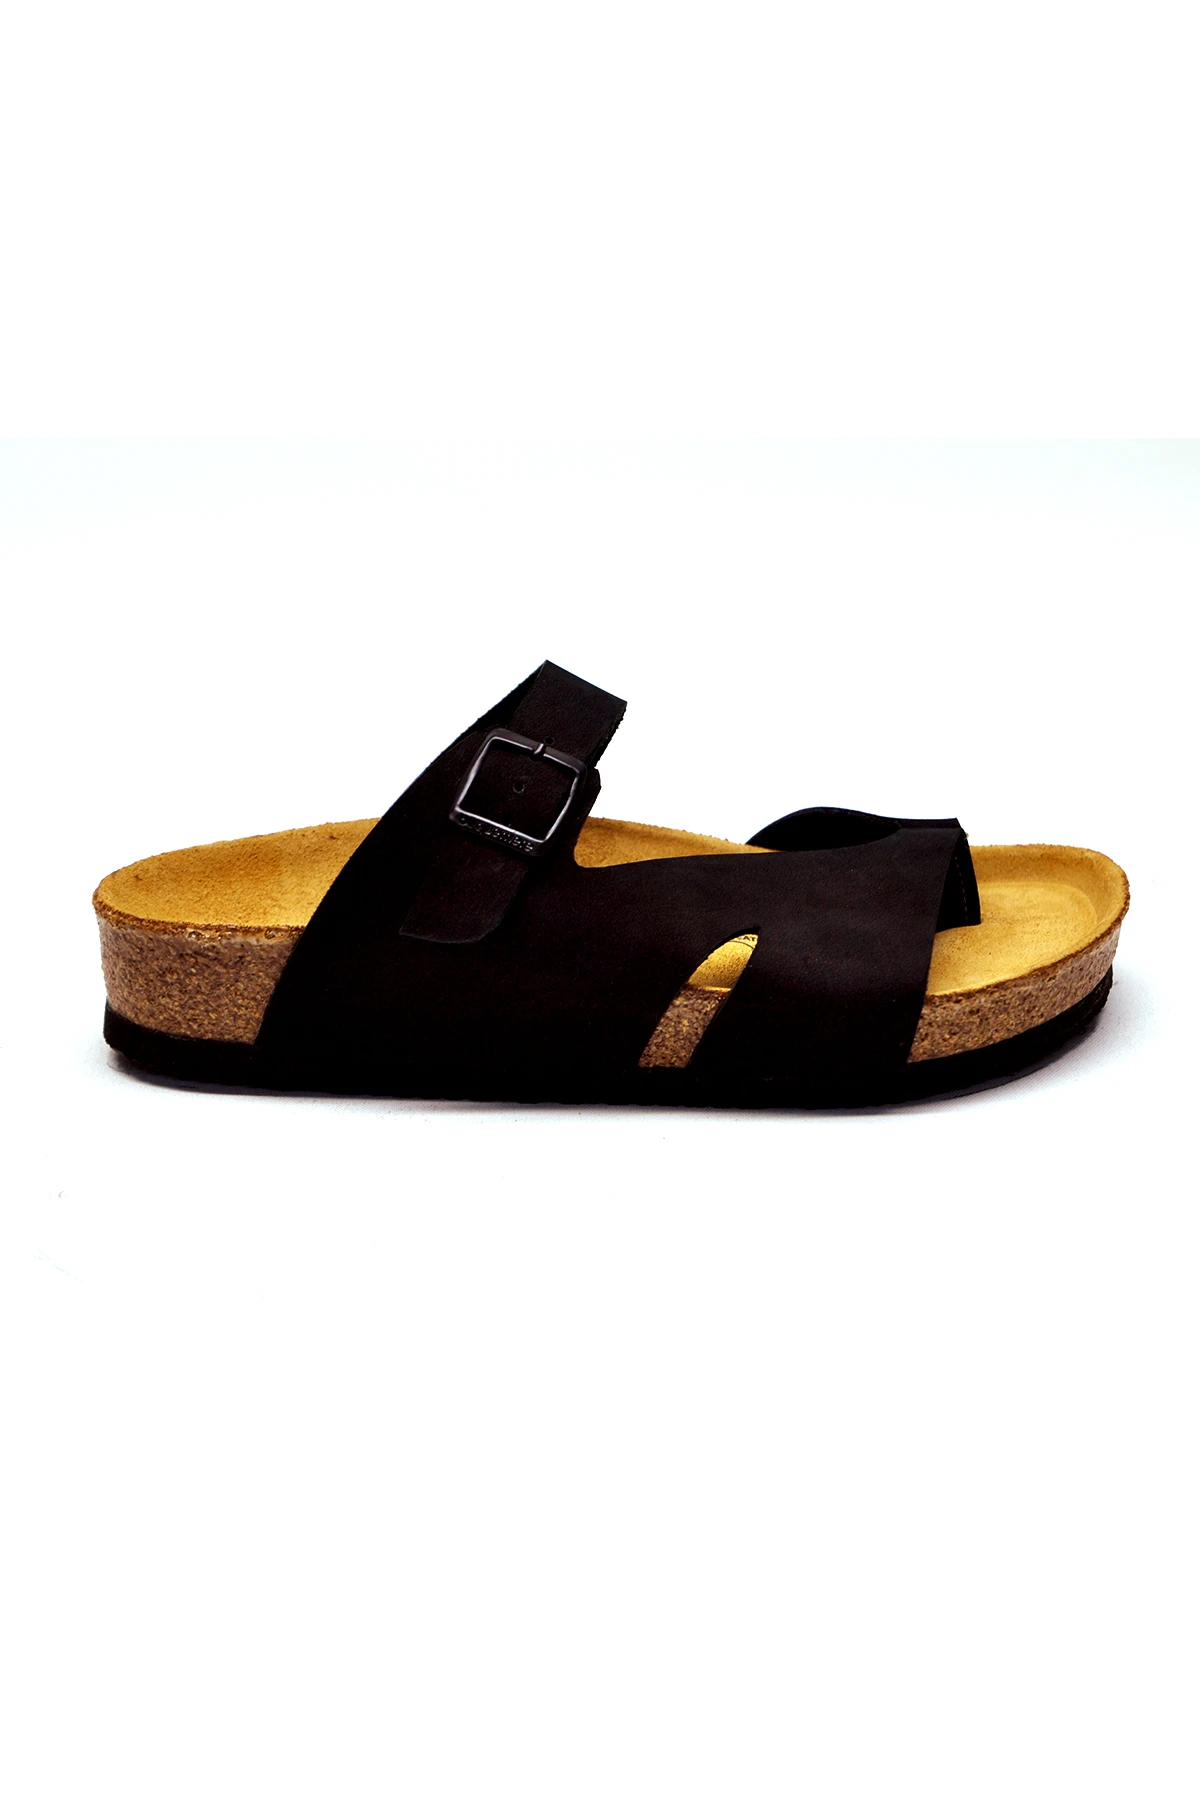 cork bottom sandals